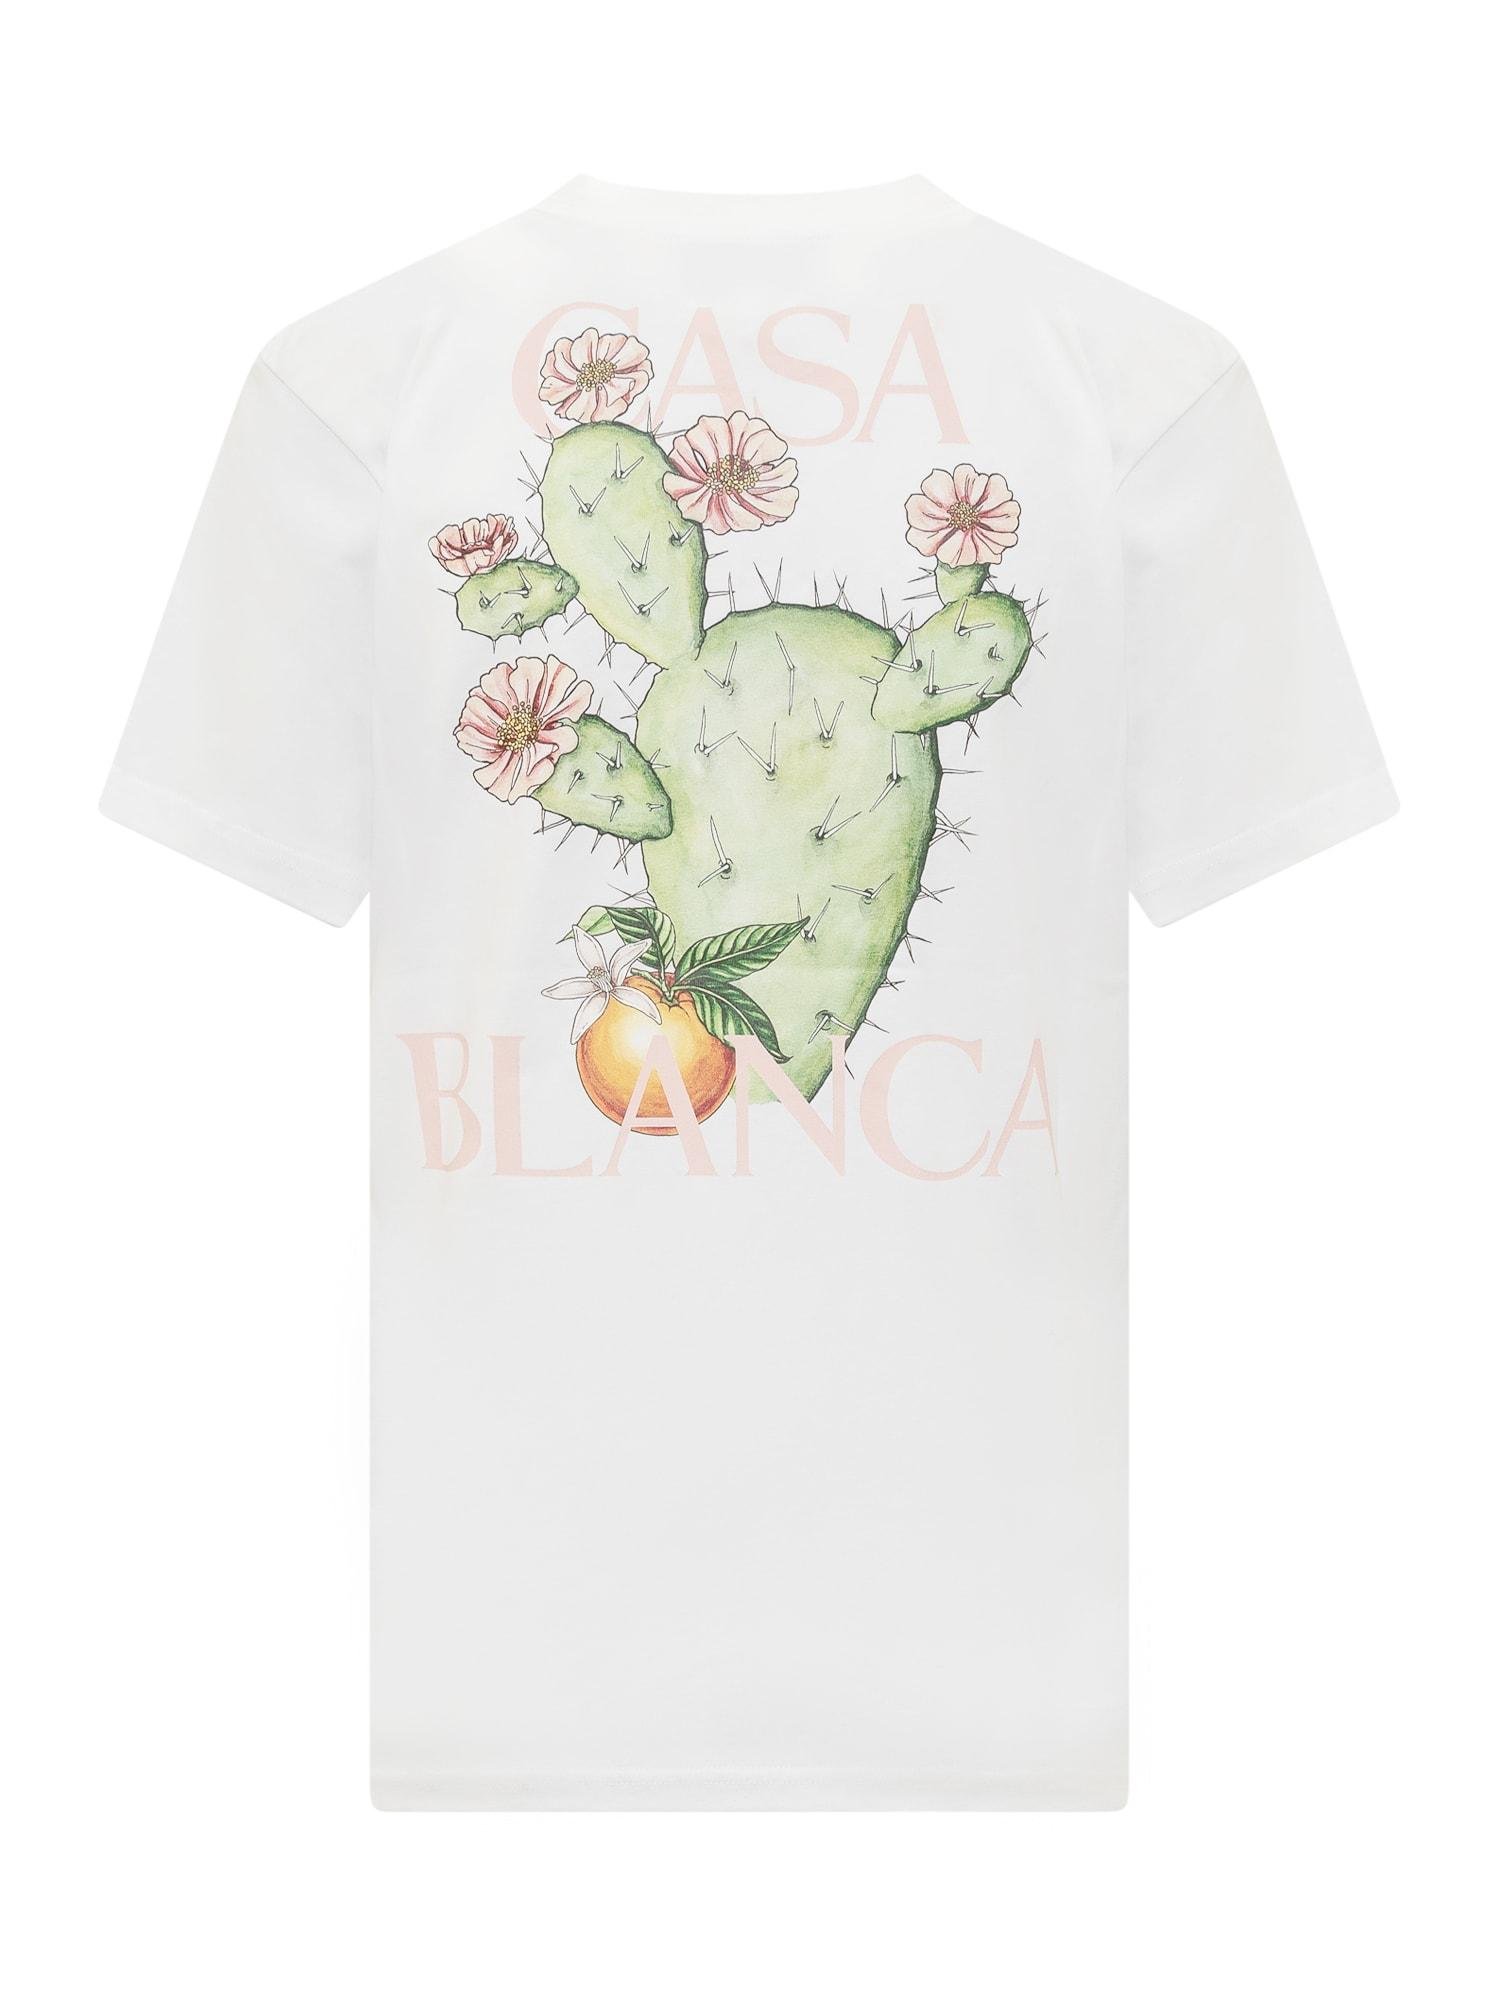 CASABLANCA Cactus T-shirt in White | Lyst